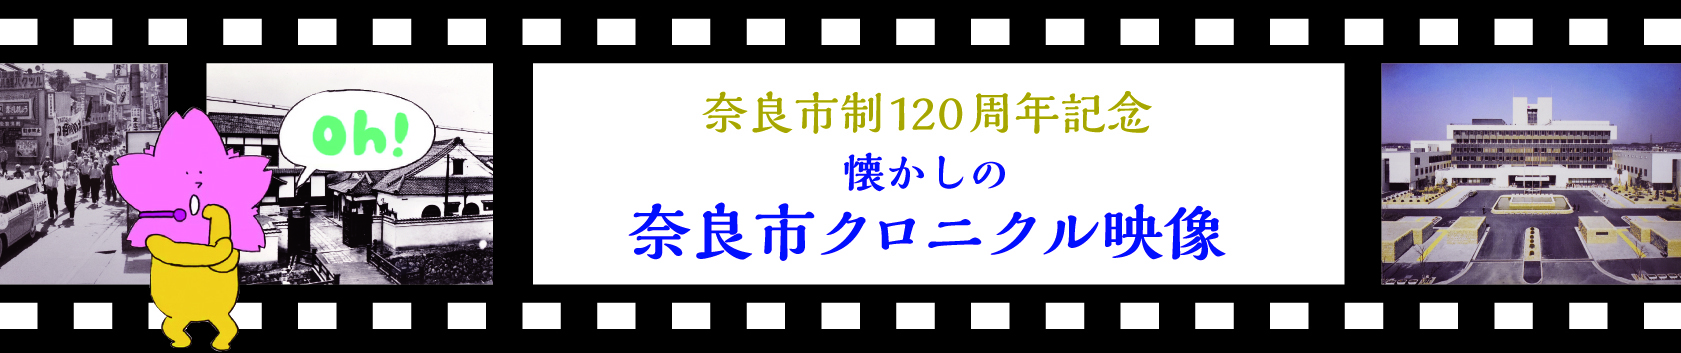 奈良市制120周年記念　懐かしの奈良市クロニクル映像 -奈良市動画チャンネル-の画像